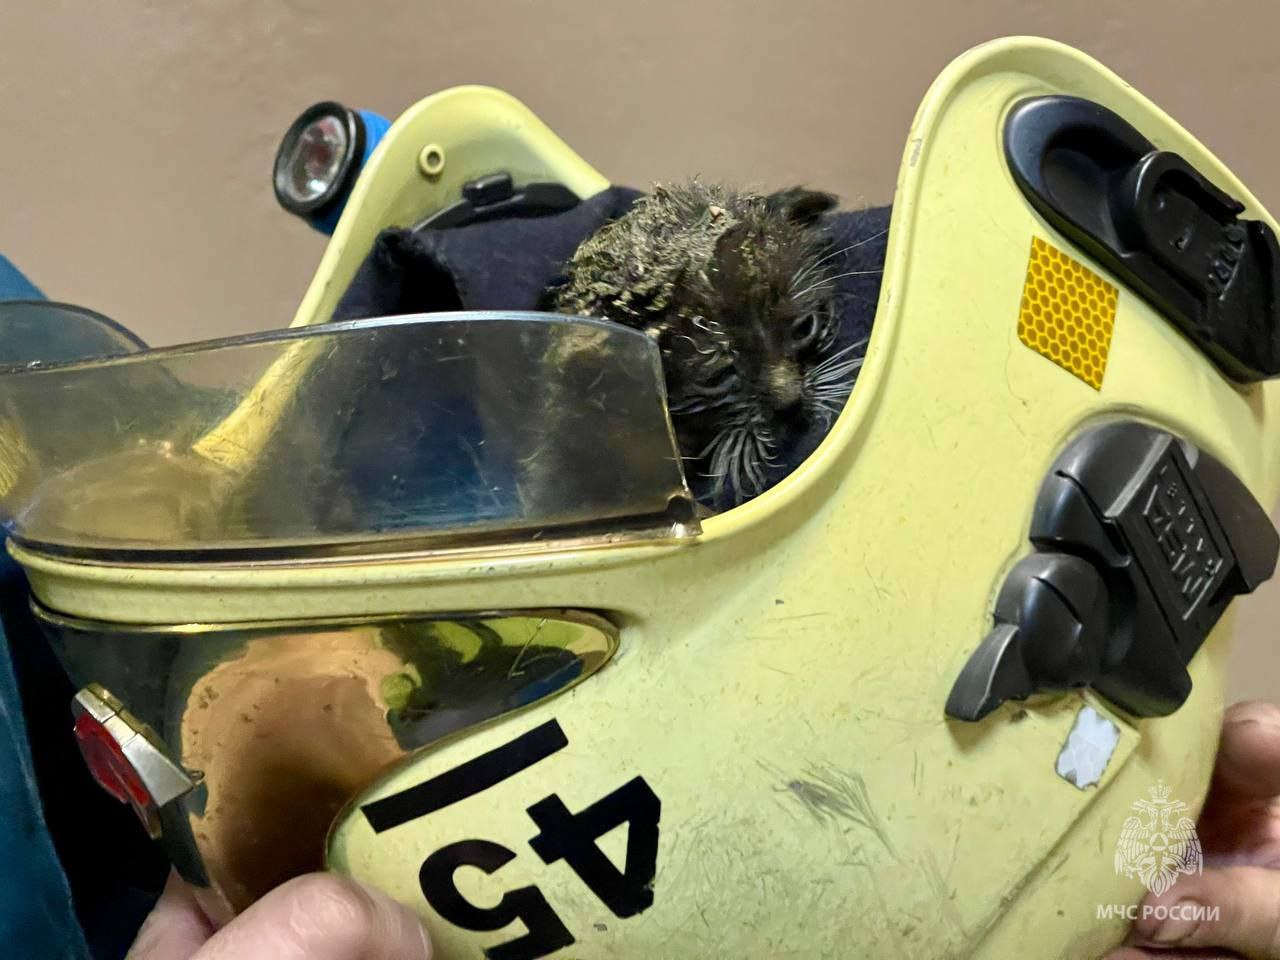 Прошел огонь и воду: в Петербурге пожарные спасли крохотного котенка